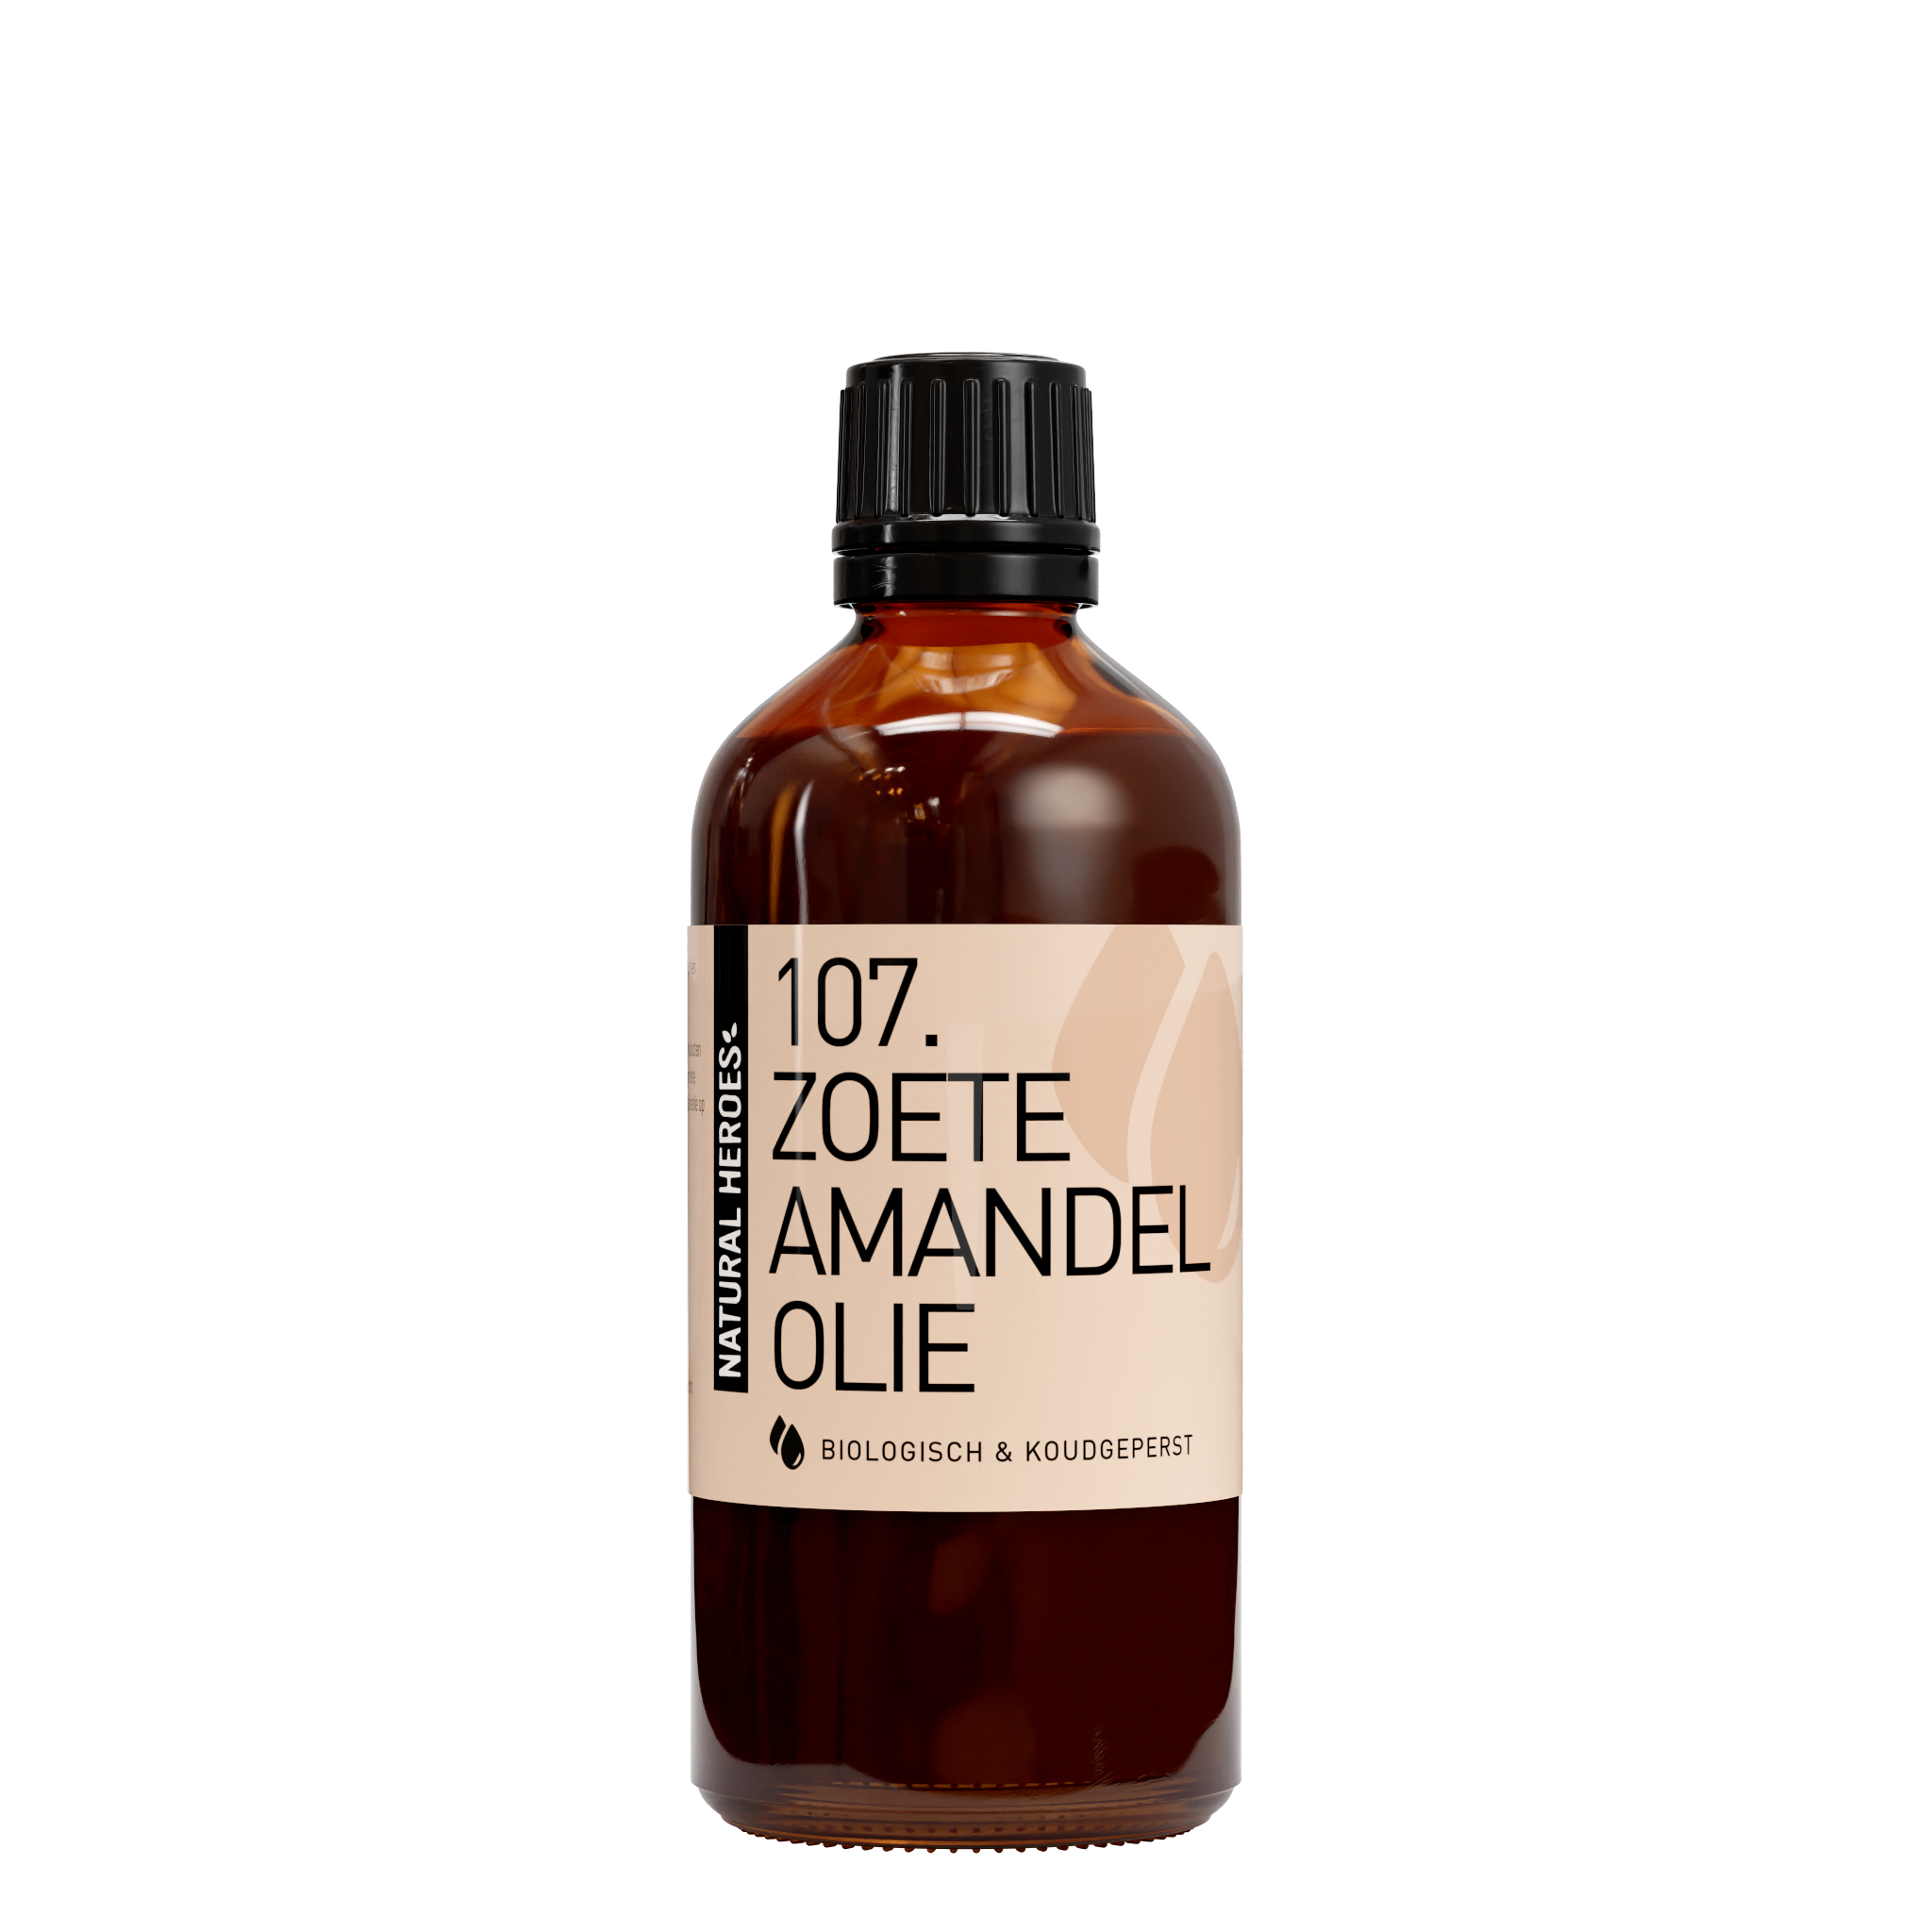 Image of Zoete Amandelolie (Biologisch & Koudgeperst) 100 ml